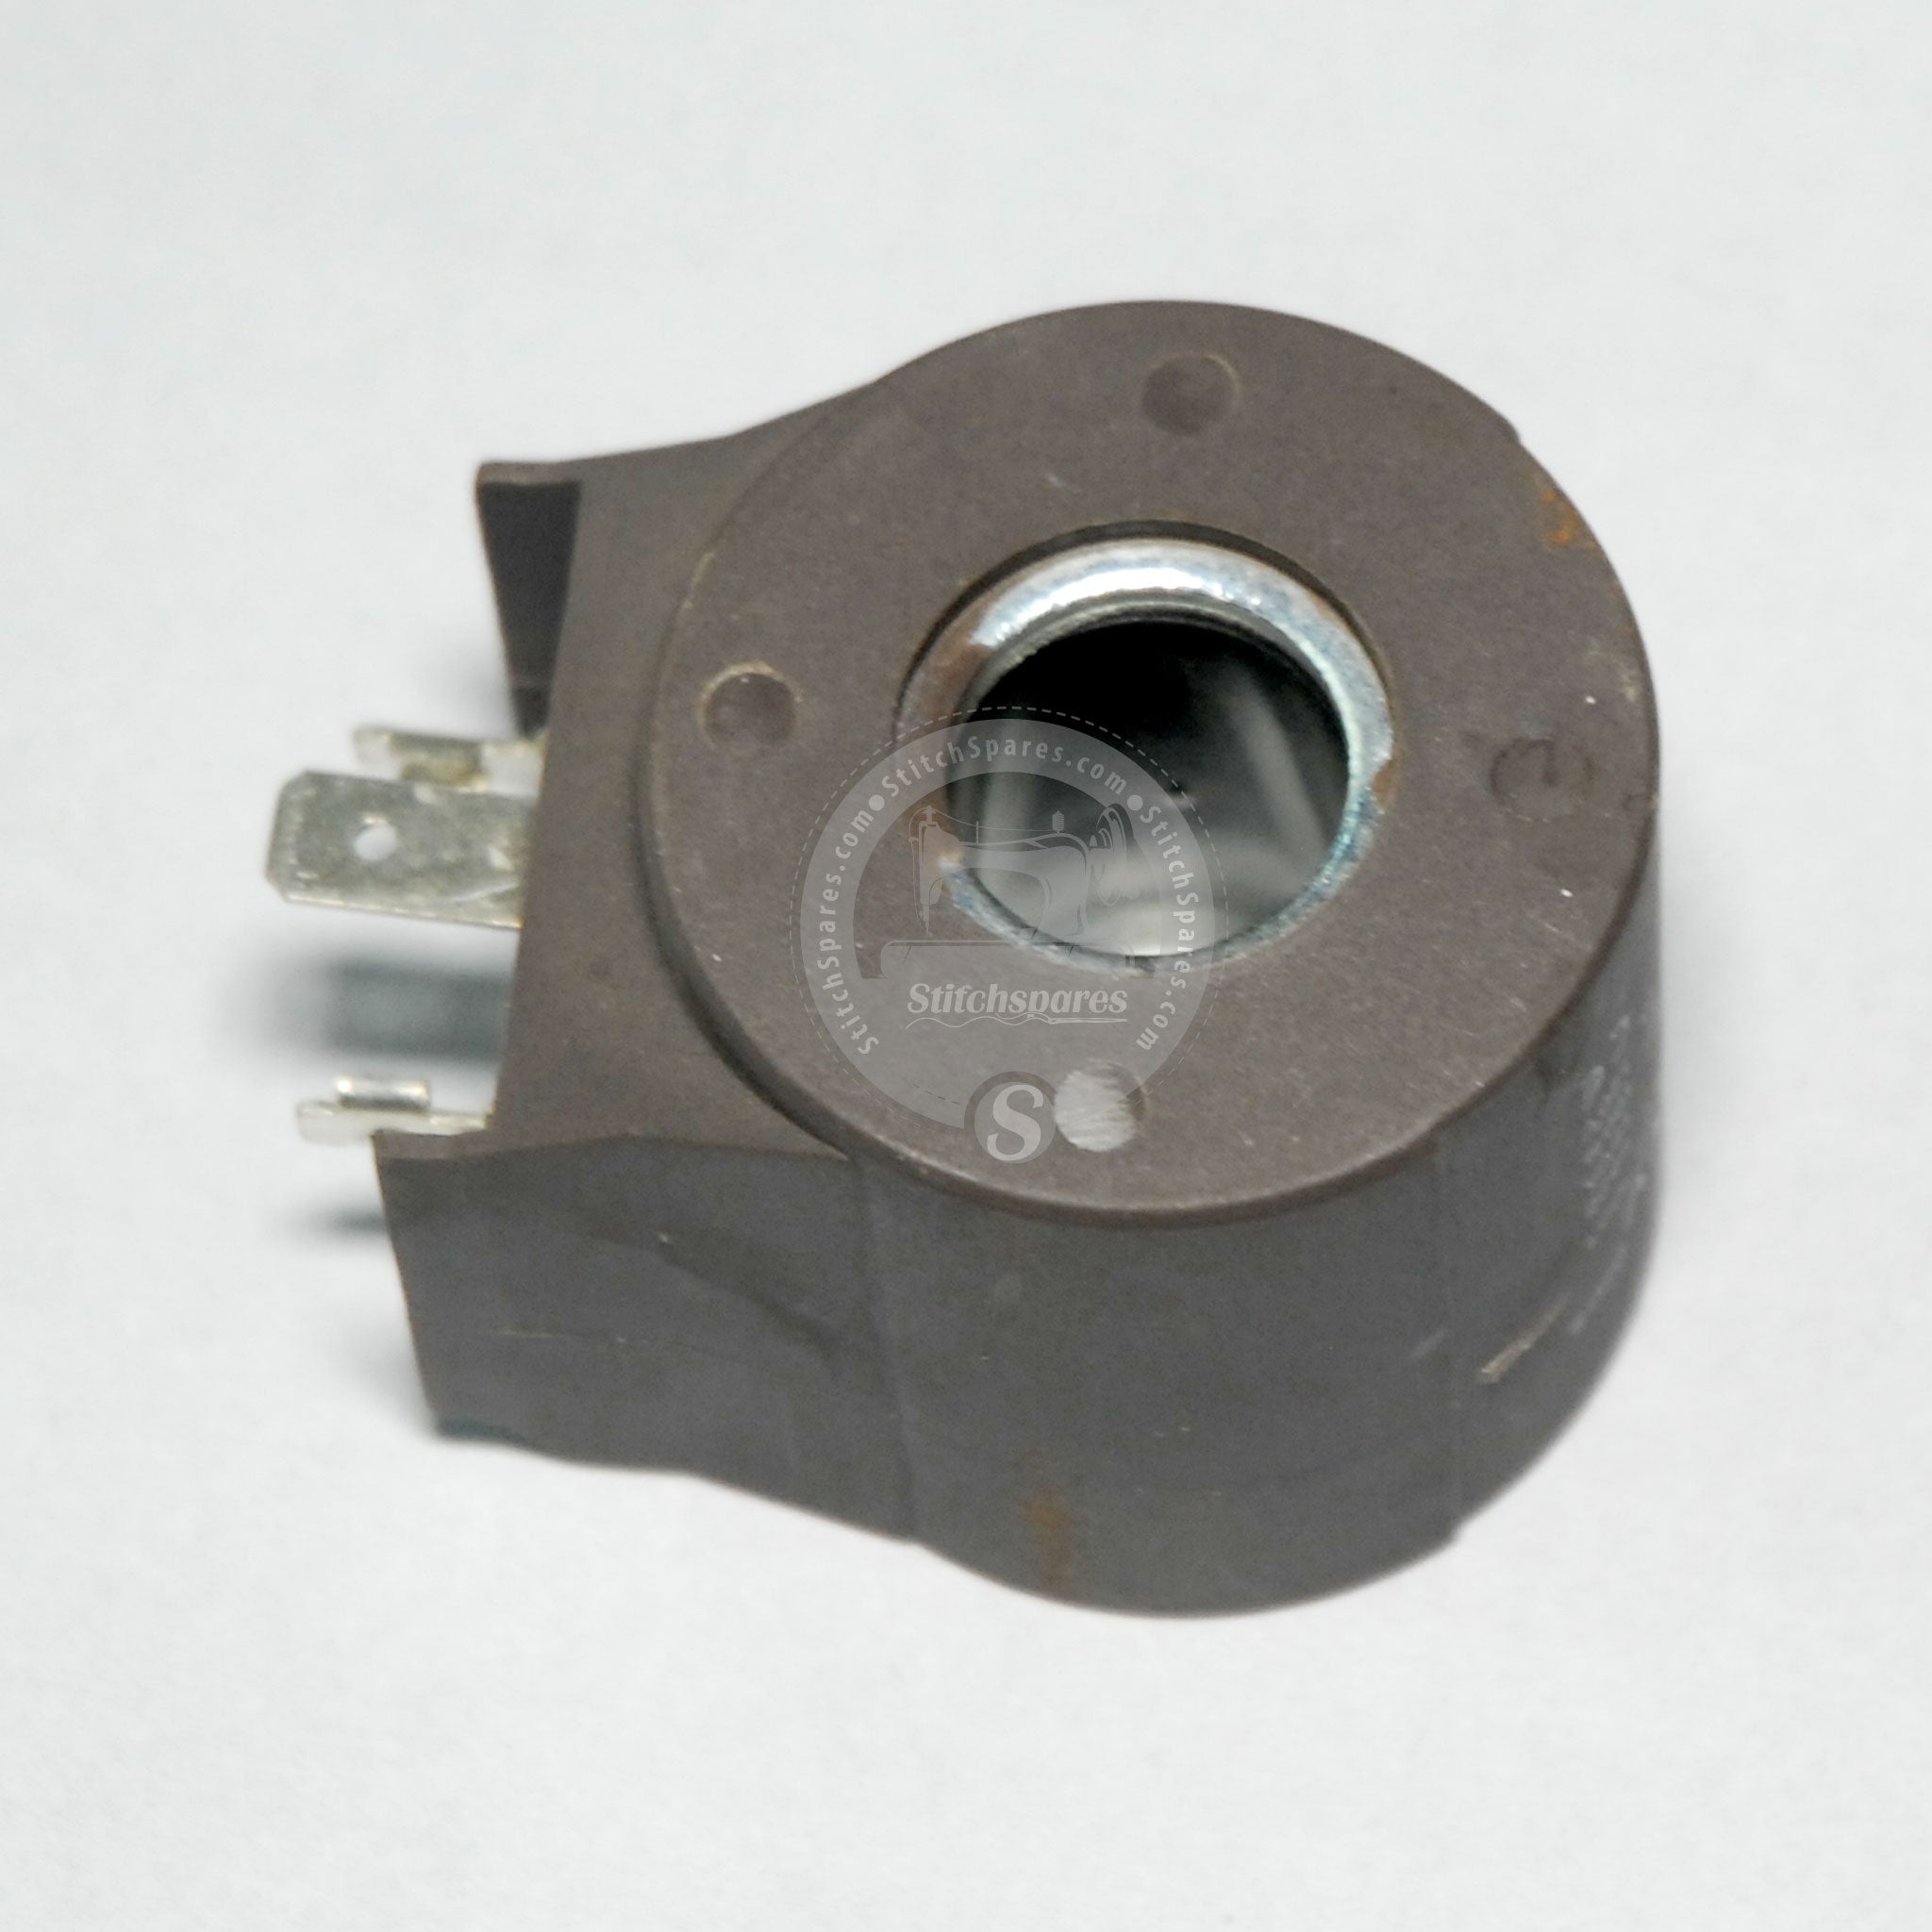 Bobina de válvula solenoide (tipo redondo) para caldera de prensa de vapor y mesa de prensa de vapor